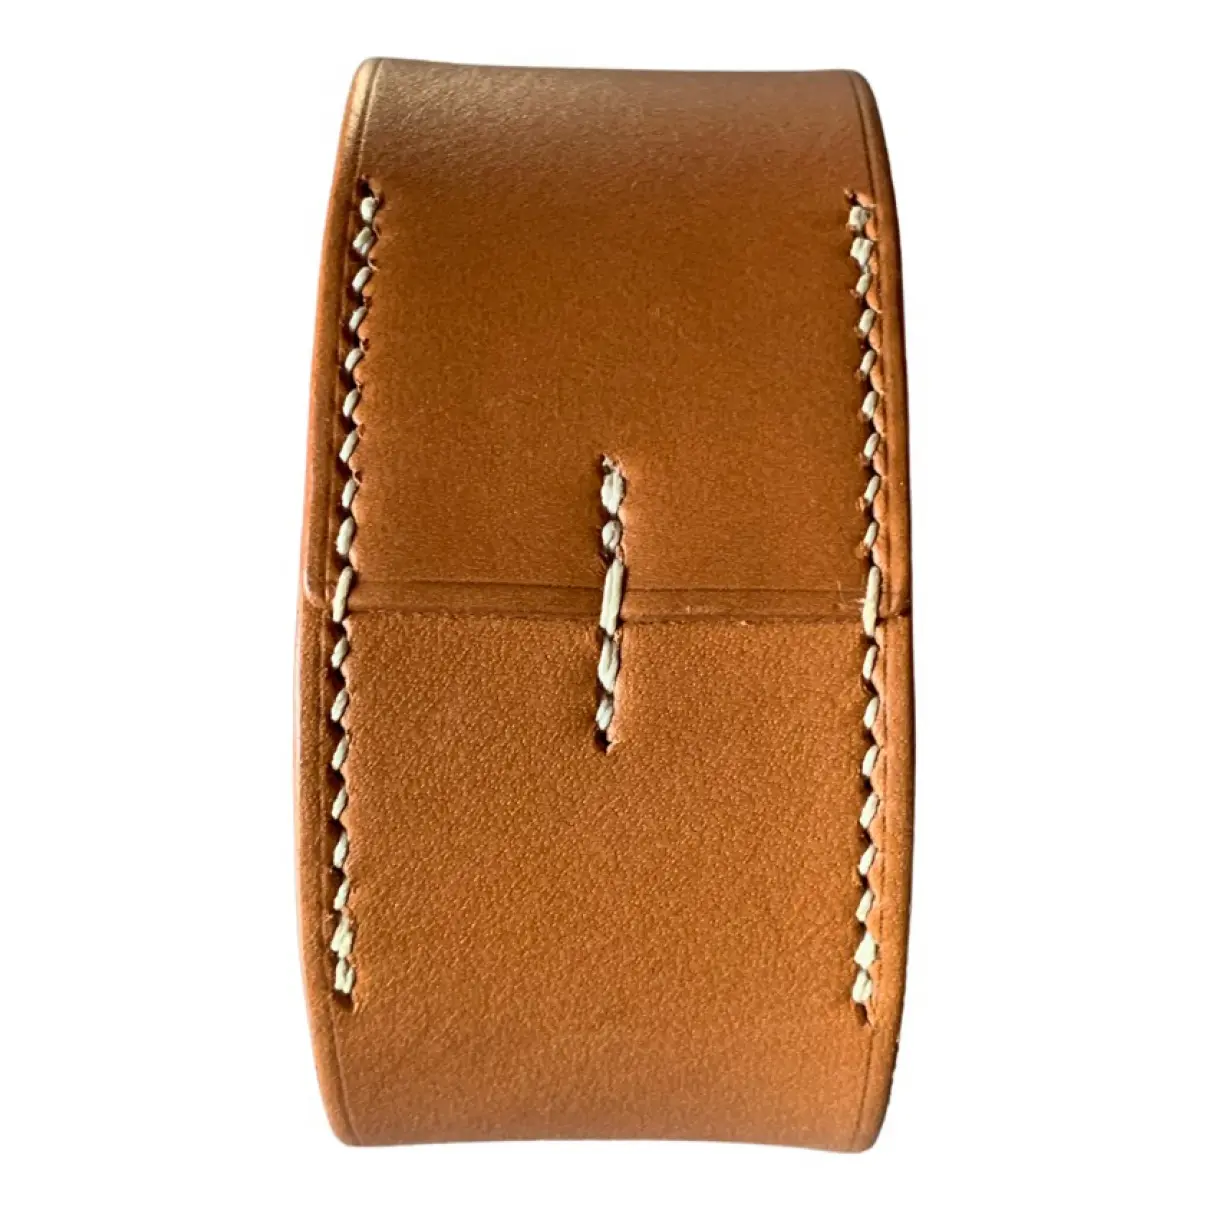 Leather bracelet Hermès - Vintage